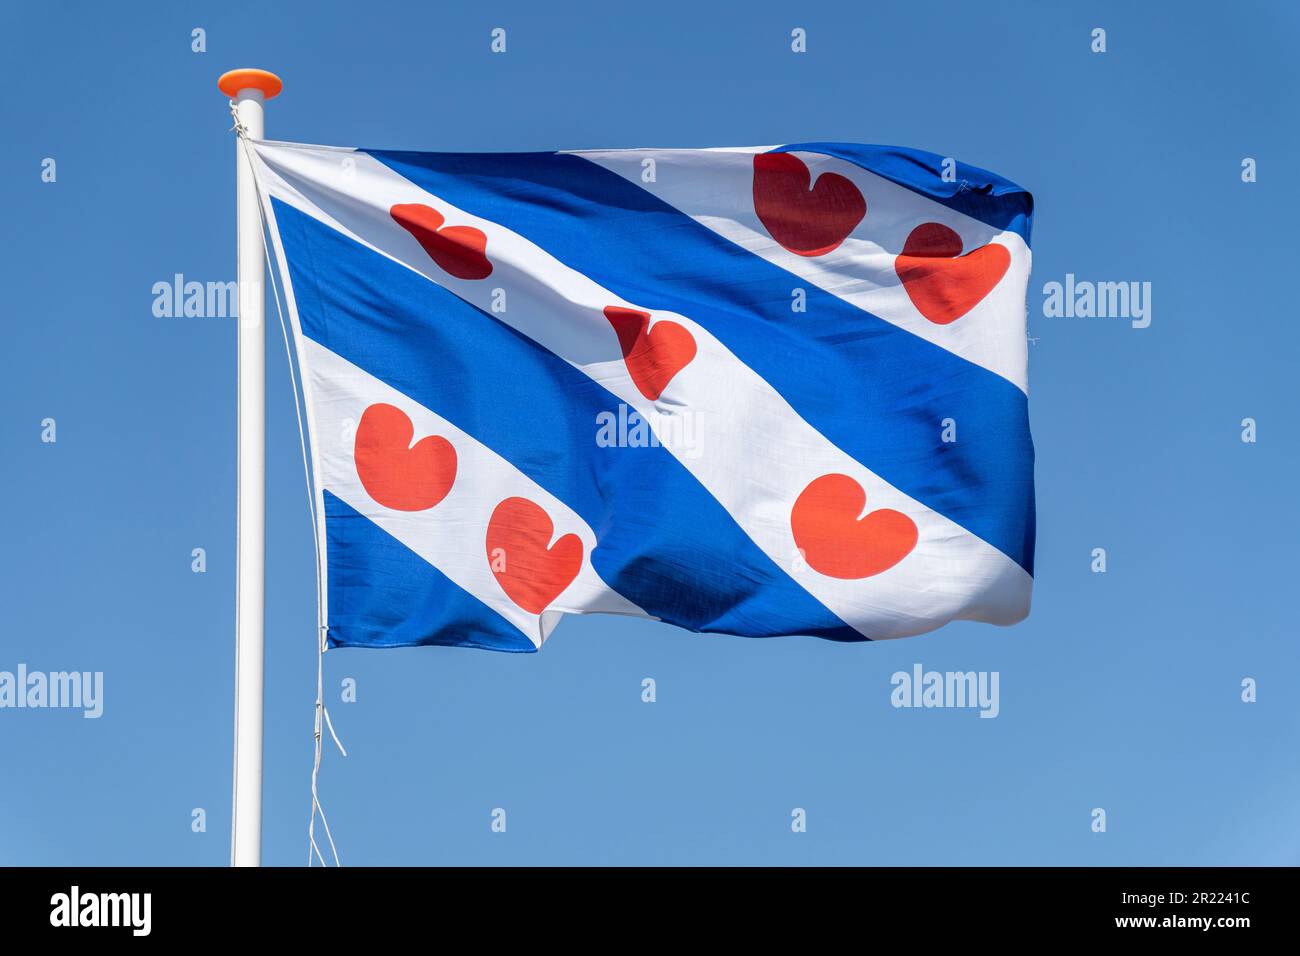 Flagge der niederländischen Provinz Friesland, die im Wind fliegt Stockfoto